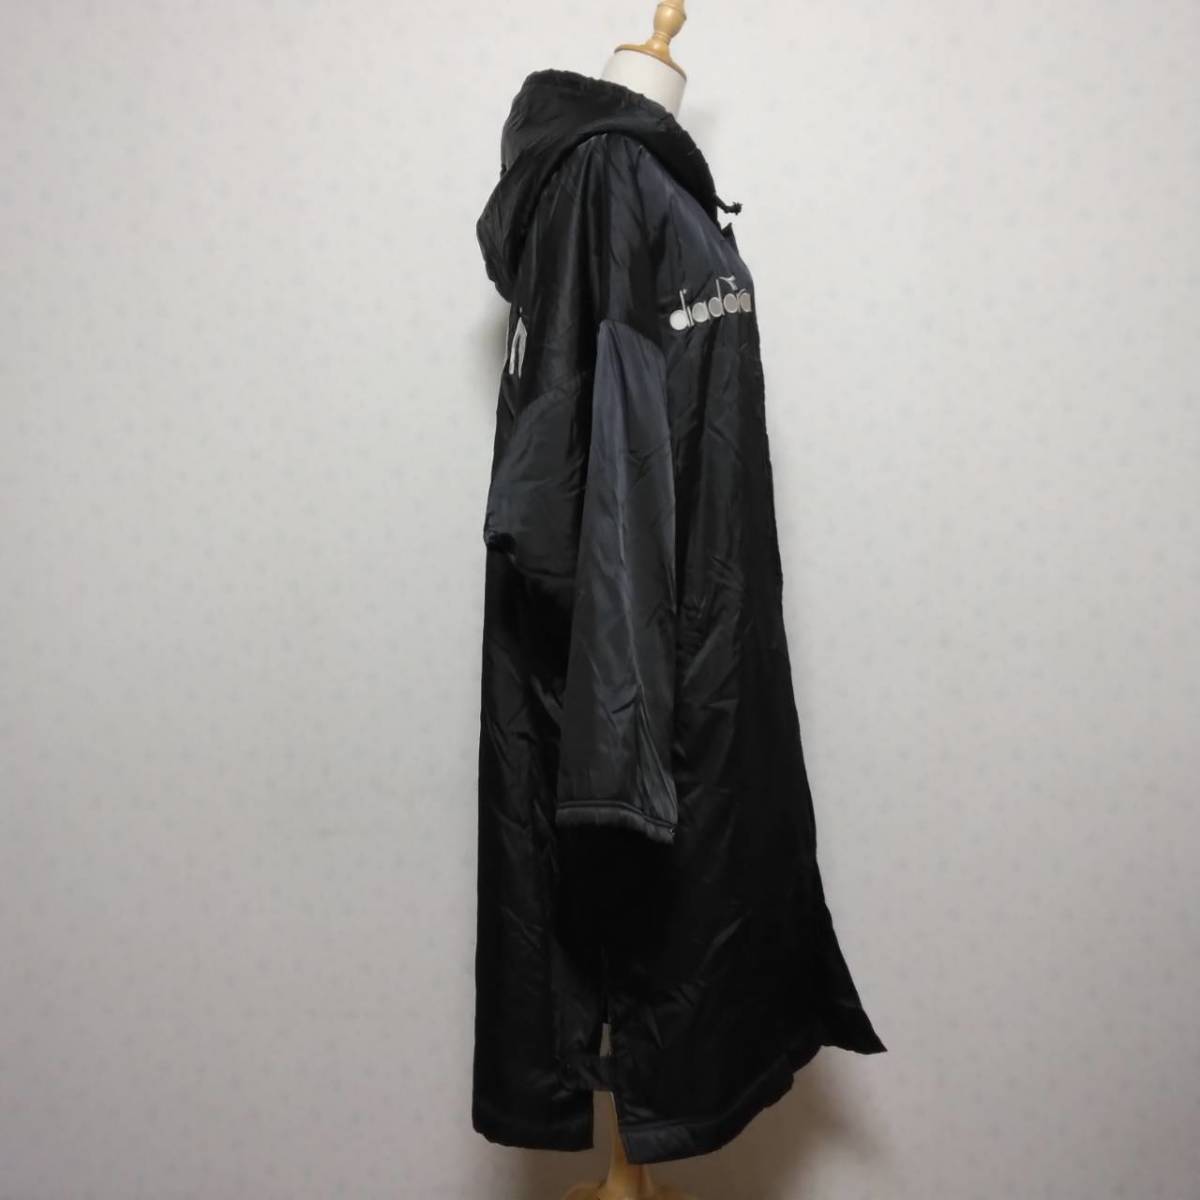 831 DIADORA Diadora с капюшоном bench пальто оттенок черного свободный размер с логотипом длинный нейлон полиэстер защищающий от холода б/у одежда USED мужской 